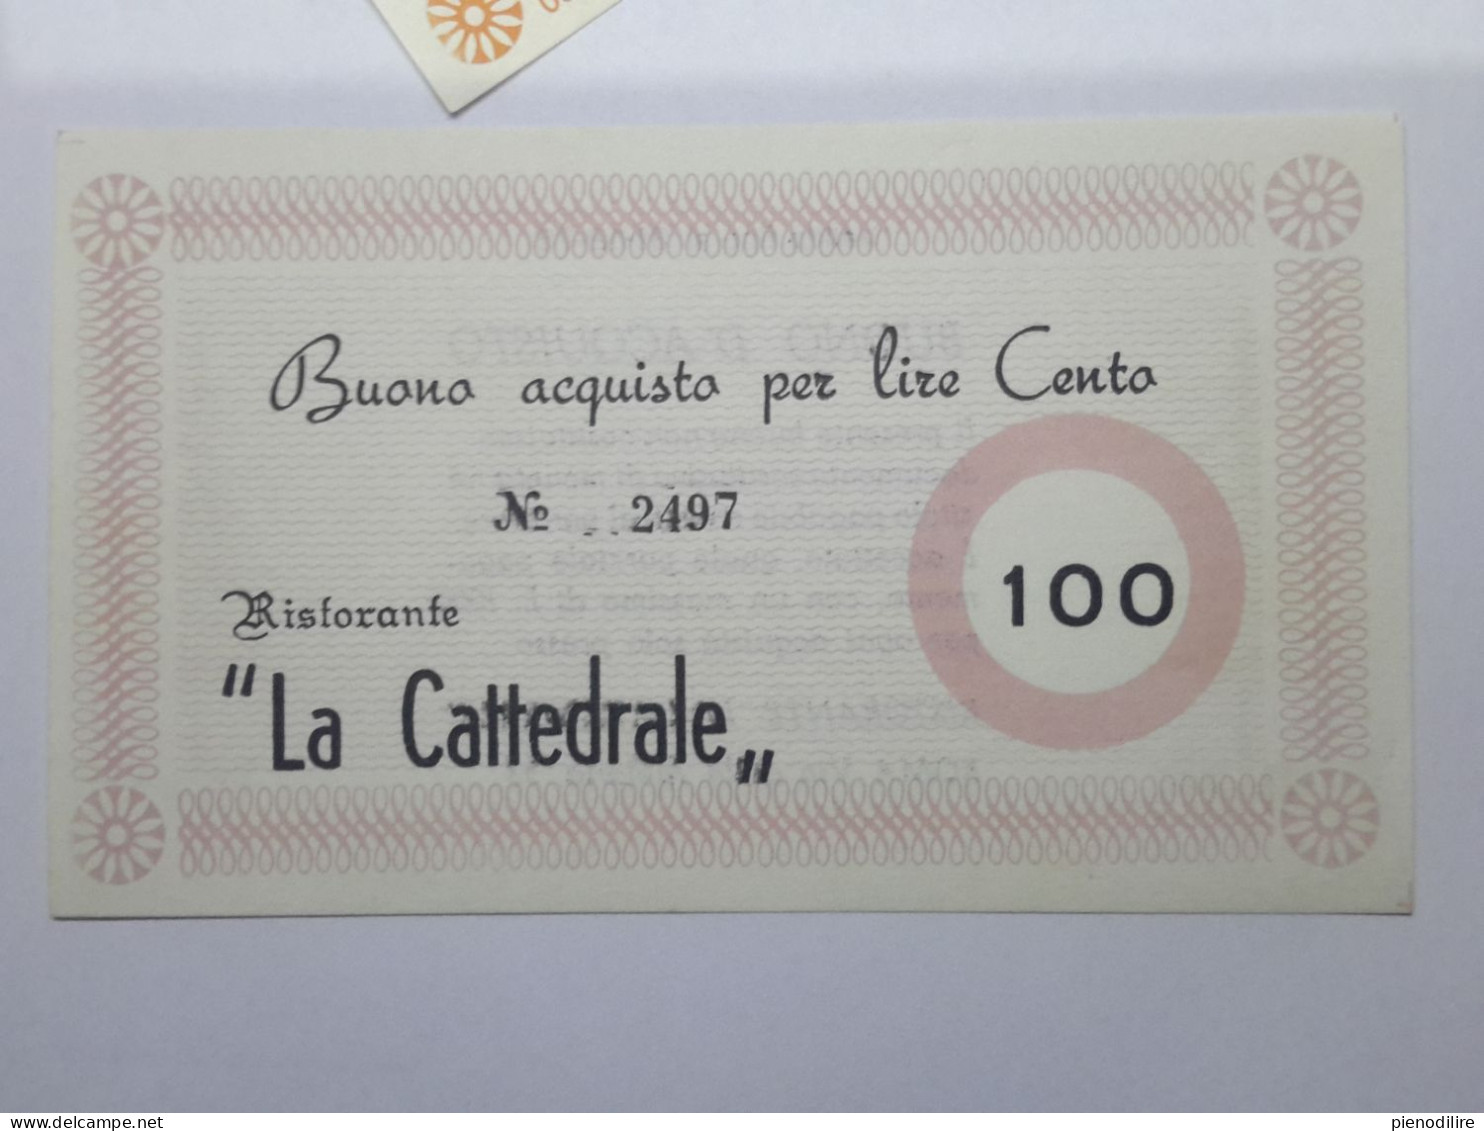 LOTTO 4Pz. 100 200 300 400 LIRE BUONI ACQUISTO RISTORANTE LA CATTEDRALE ROMA VALIDO FINO AL 31.12.1976 (A.4)